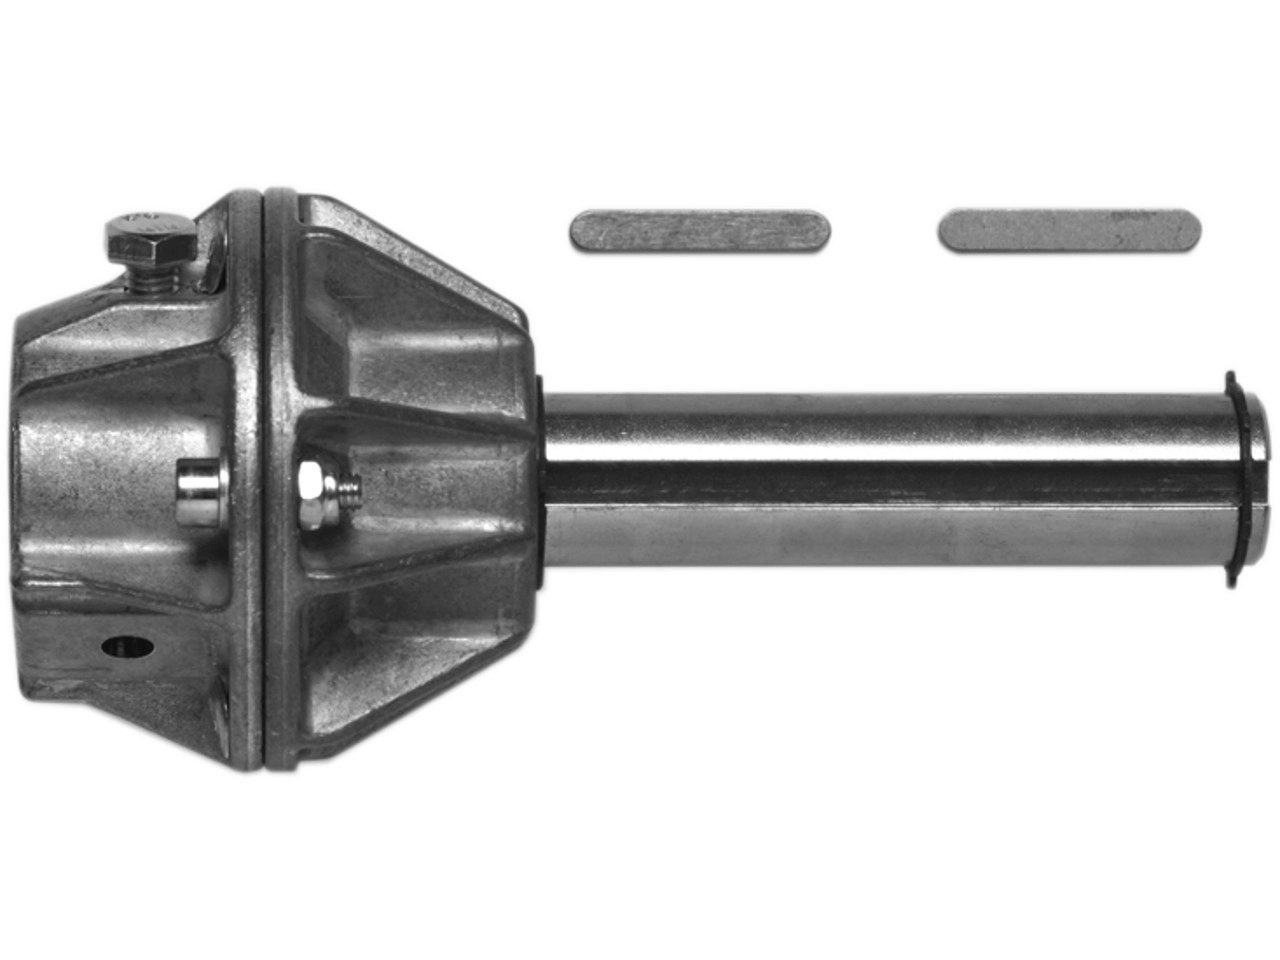 Wellenadapter Steckwelle 25.4mm mit Adapter für Federwelle 40.0mm ohne Nut